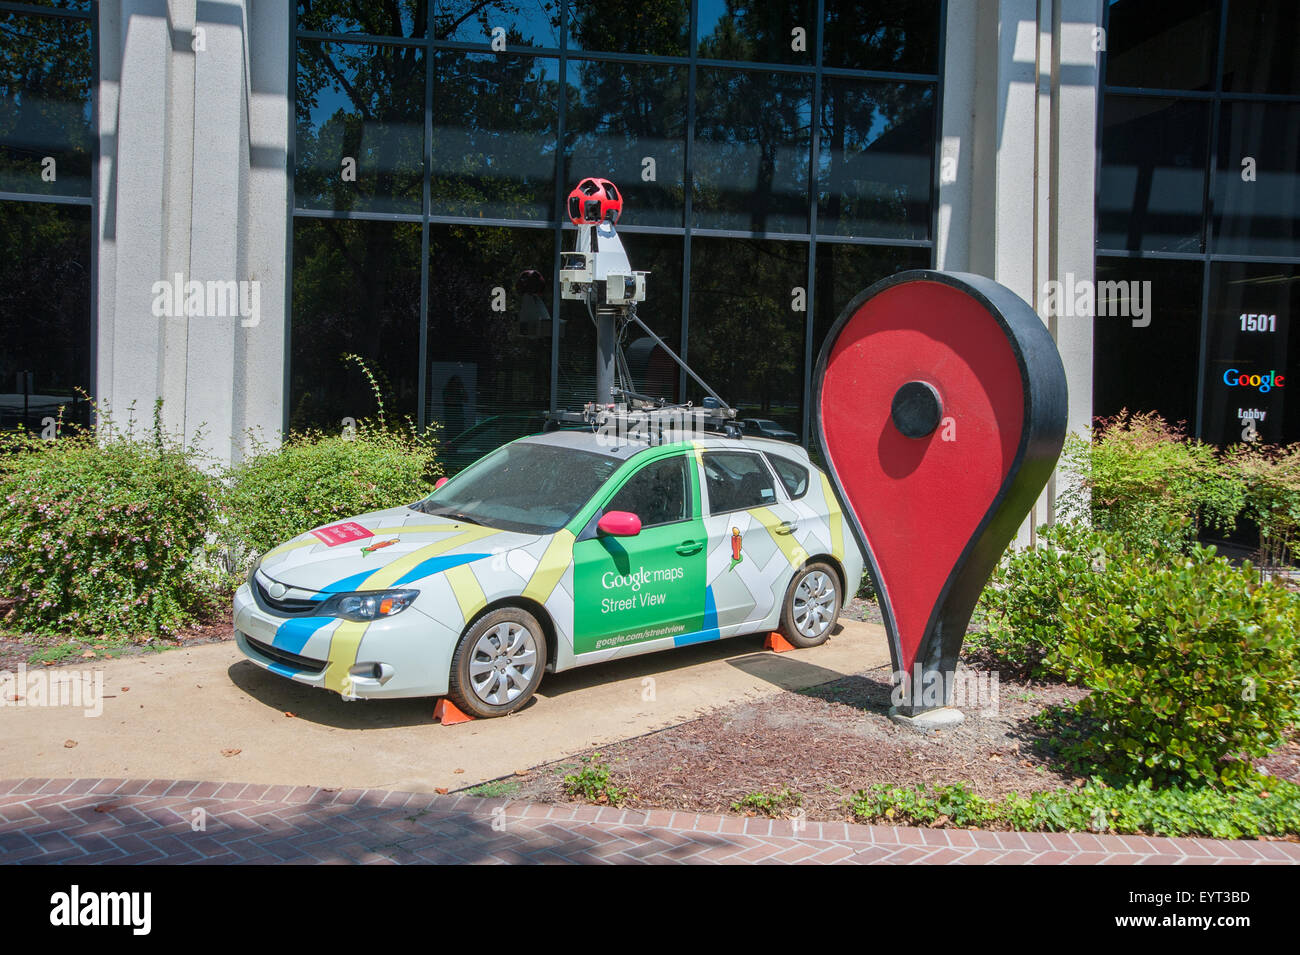 MOUNTAIN VIEW, CALIFORNIE - 1 août 2015 : Google's Street View Location sur affichage à siège de Google à Mountain View, Californie sur un Banque D'Images